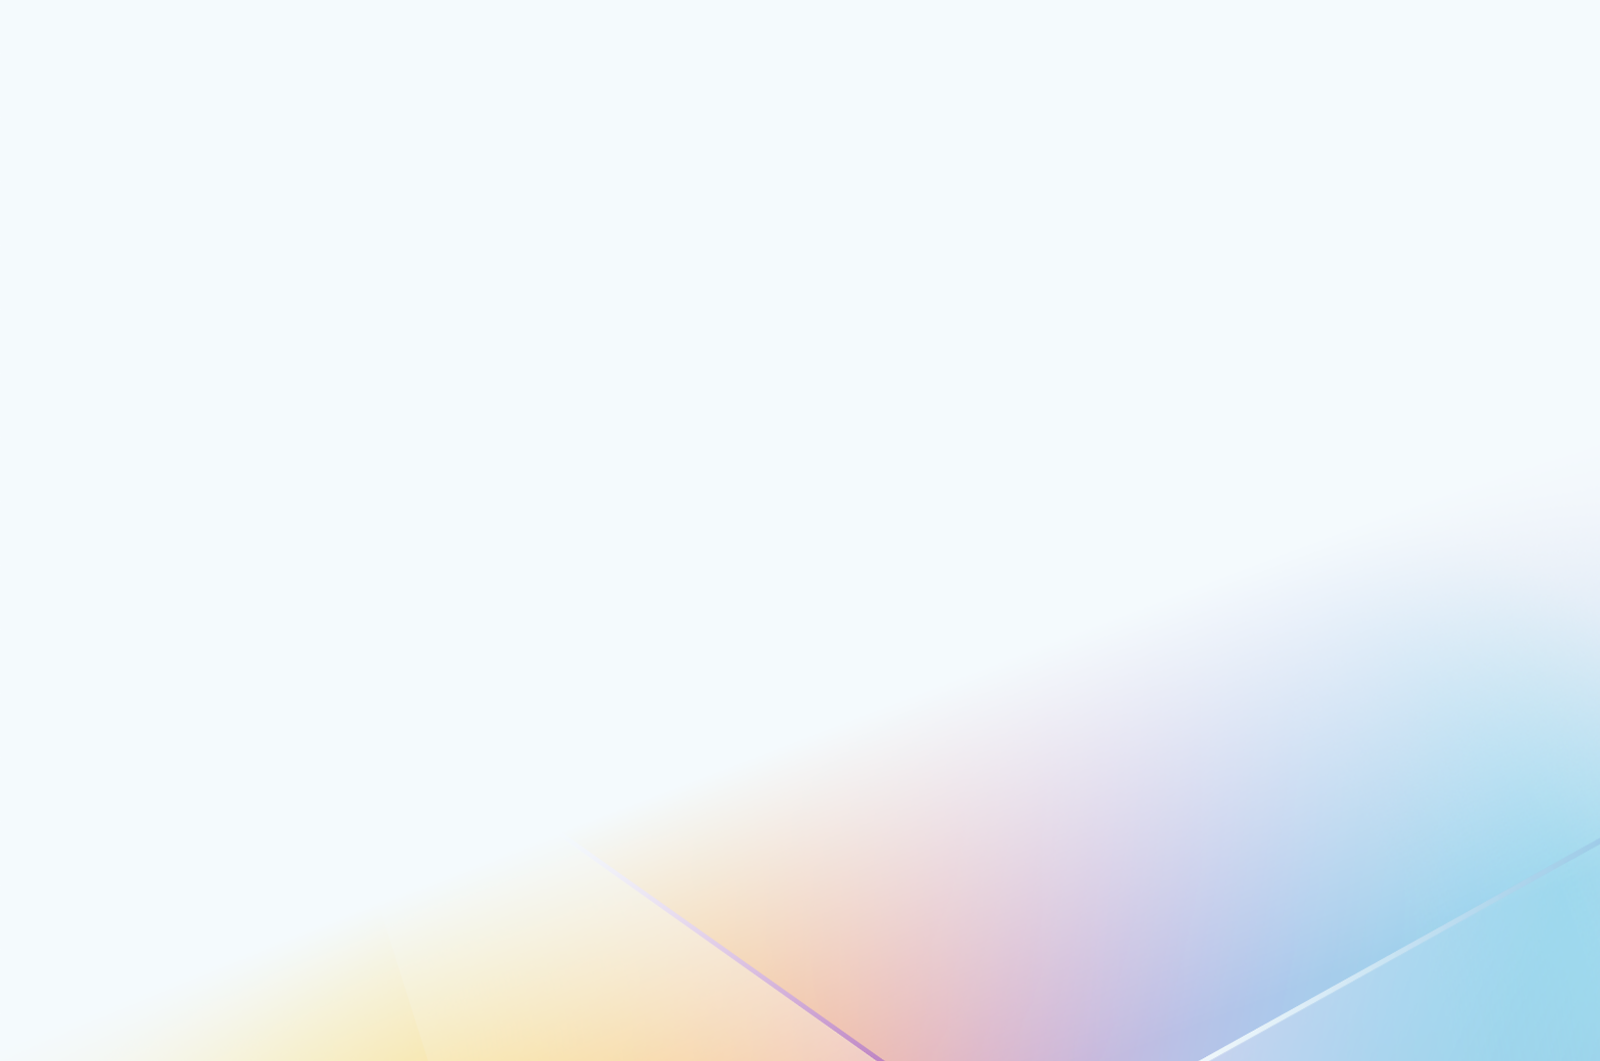 Ein Hintergrund mit Farbverlauf, der von Hellblau zu Hellorange übergeht und einen beruhigenden Pastell-Effekt erzeugt.